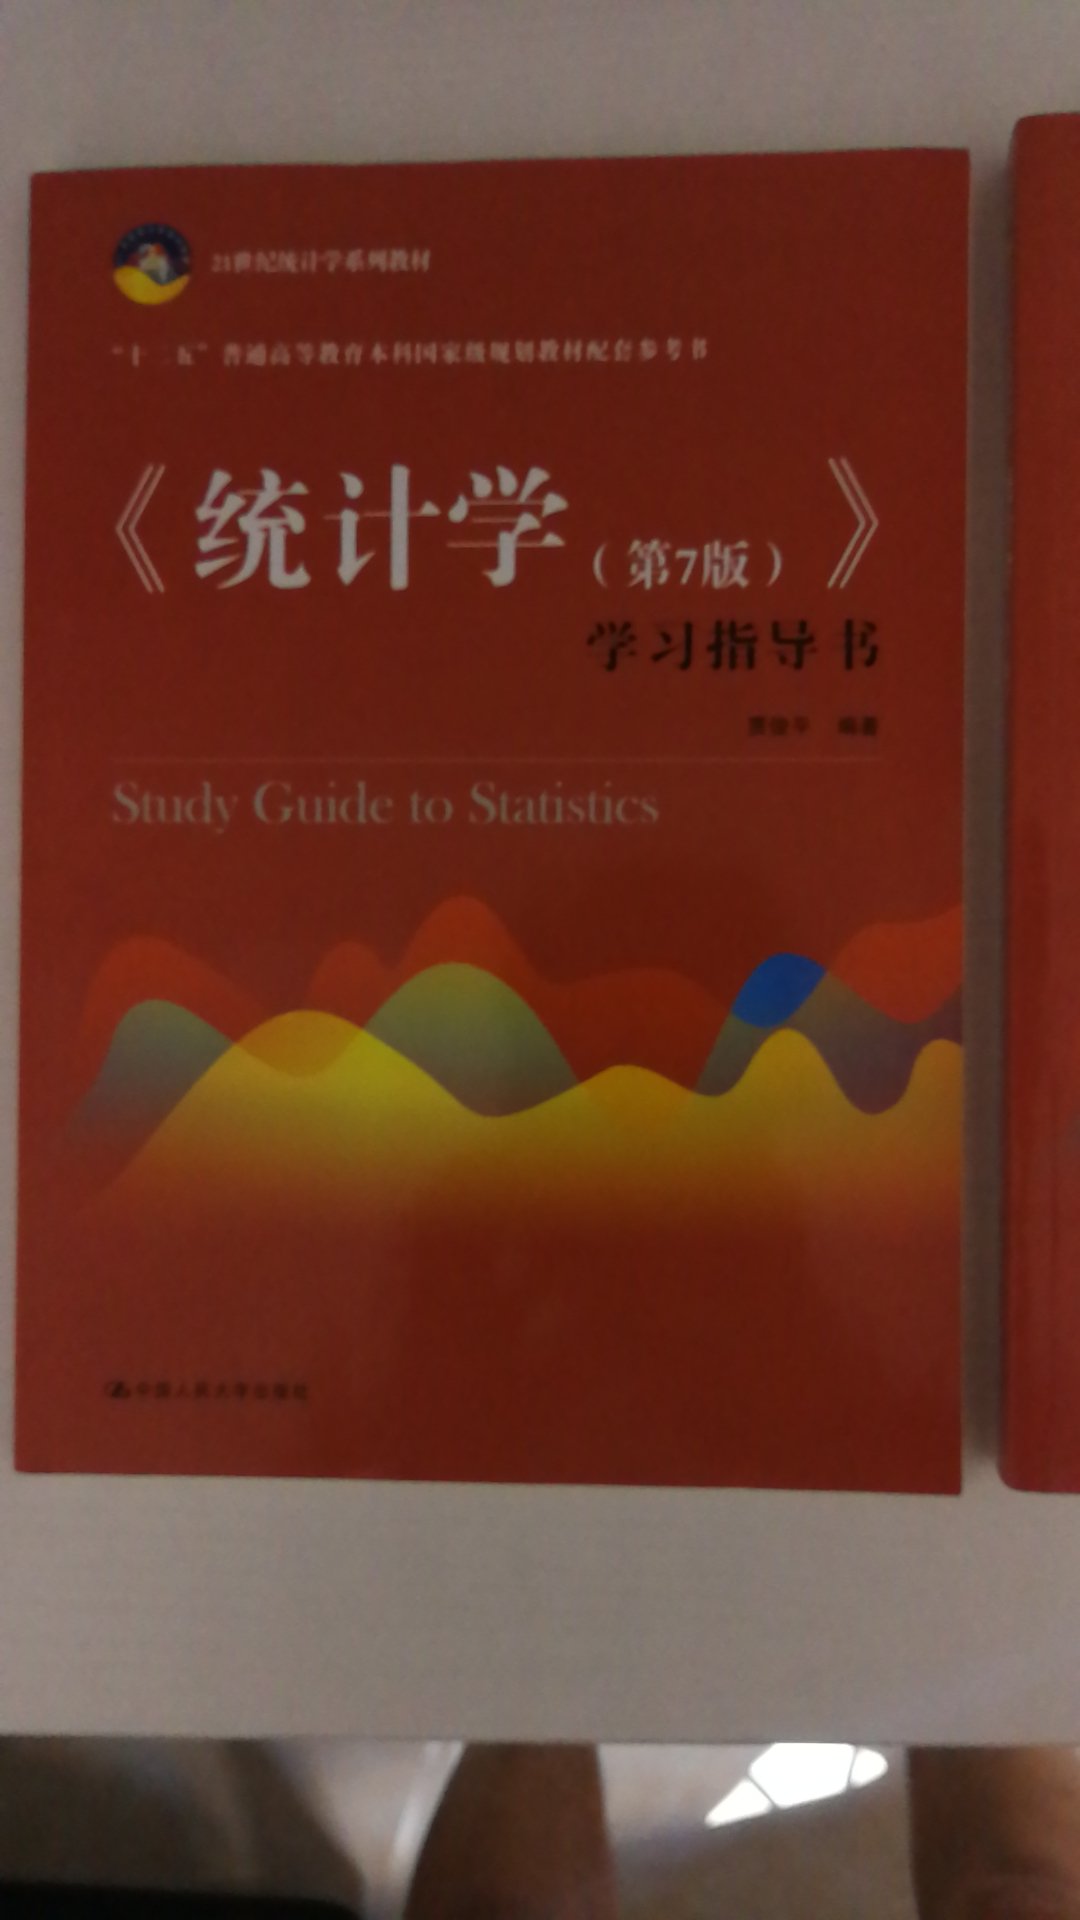 经典的统计学书籍，这是最新版，纸张和印刷都特别好，这次买了统计学和指导书，准备好好学习一下！